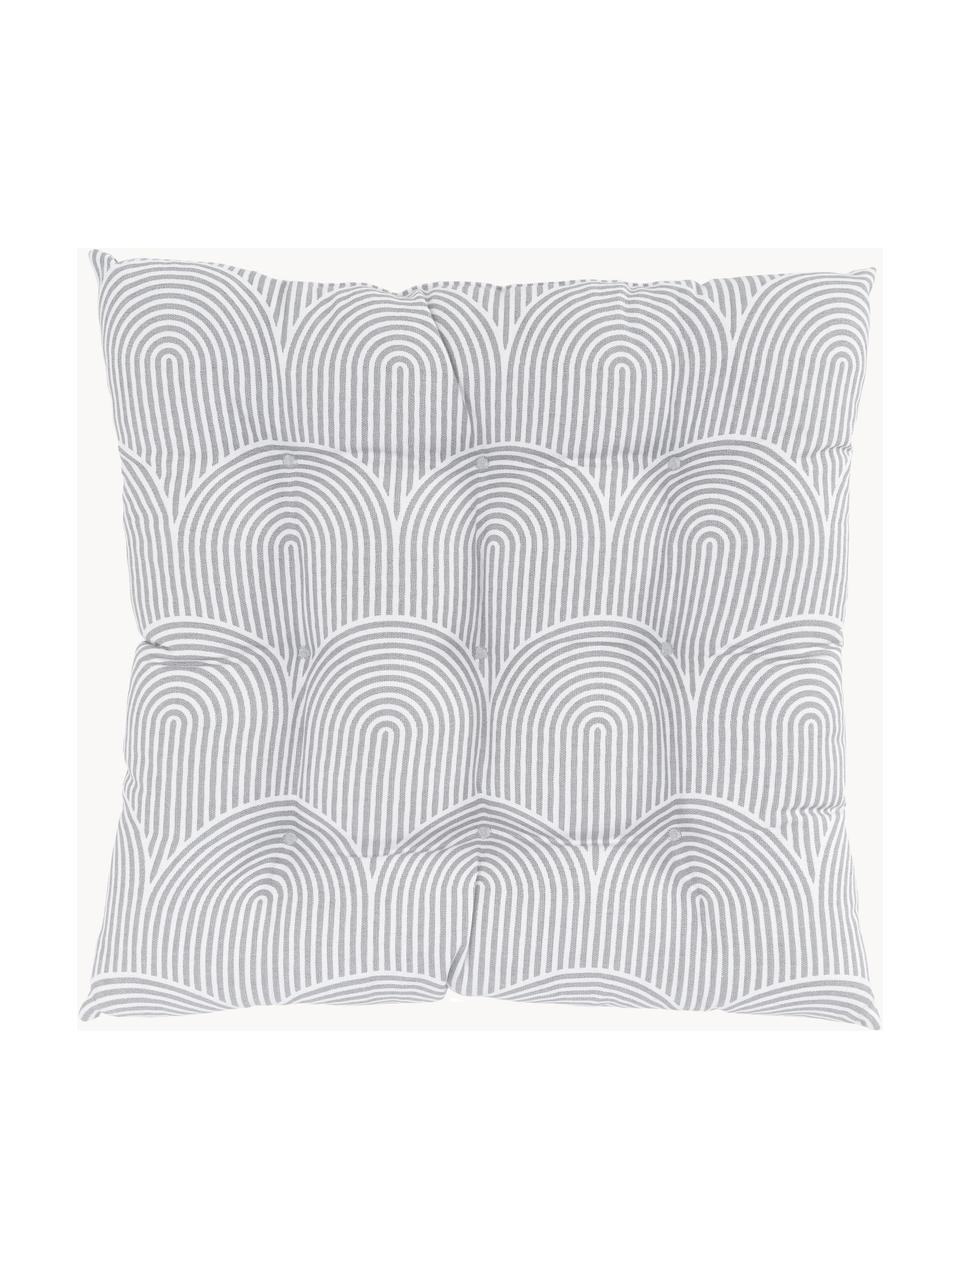 Baumwoll-Sitzkissen Arc, Bezug: 100% Baumwolle, Grau, Weiß, B 40 x L 40 cm